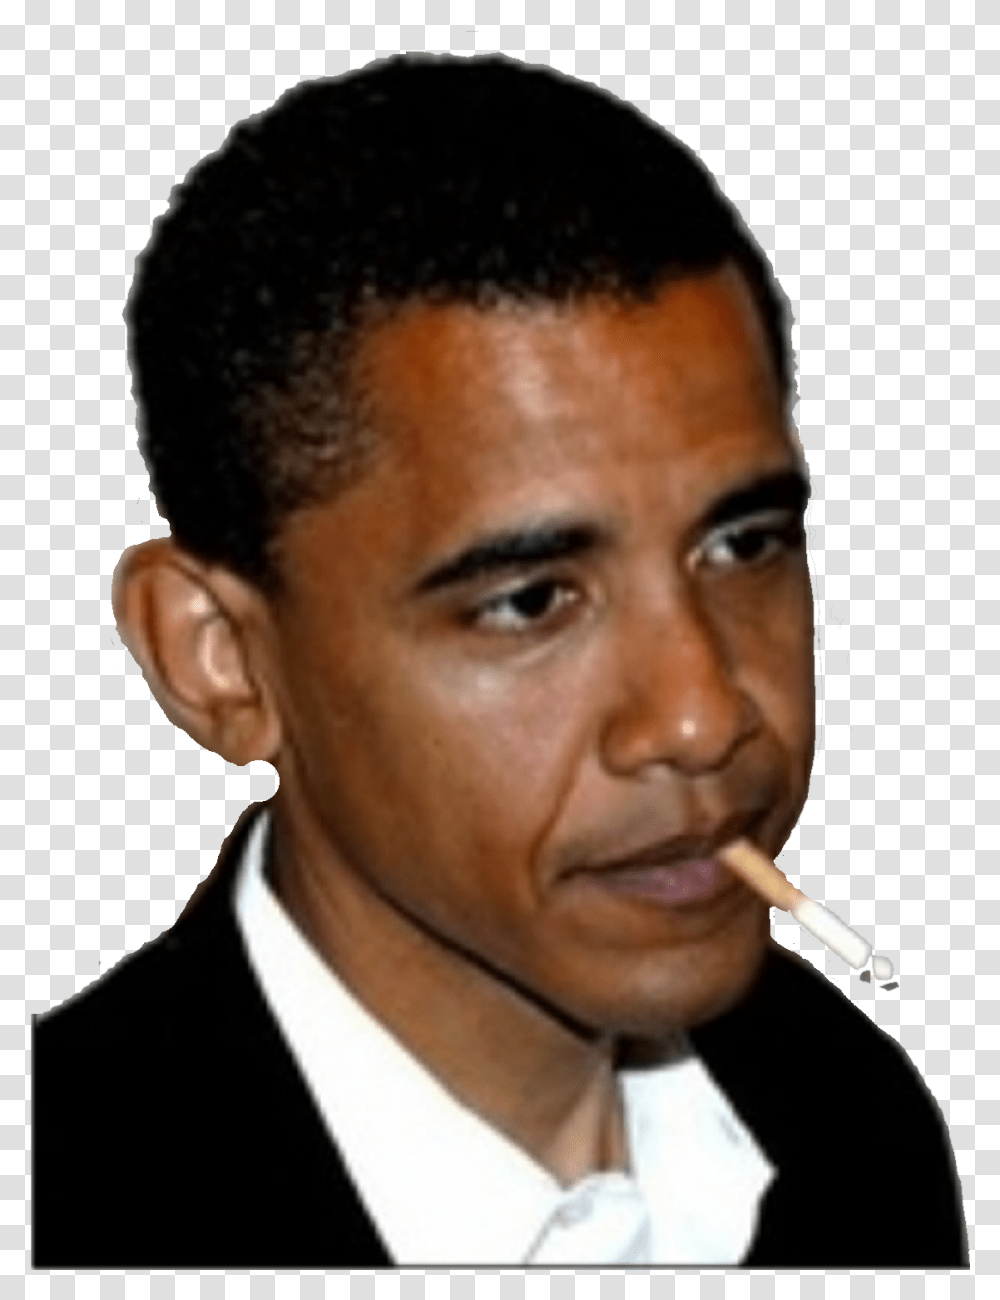 Smoking Obama, Face, Person, Human, Smoke Transparent Png